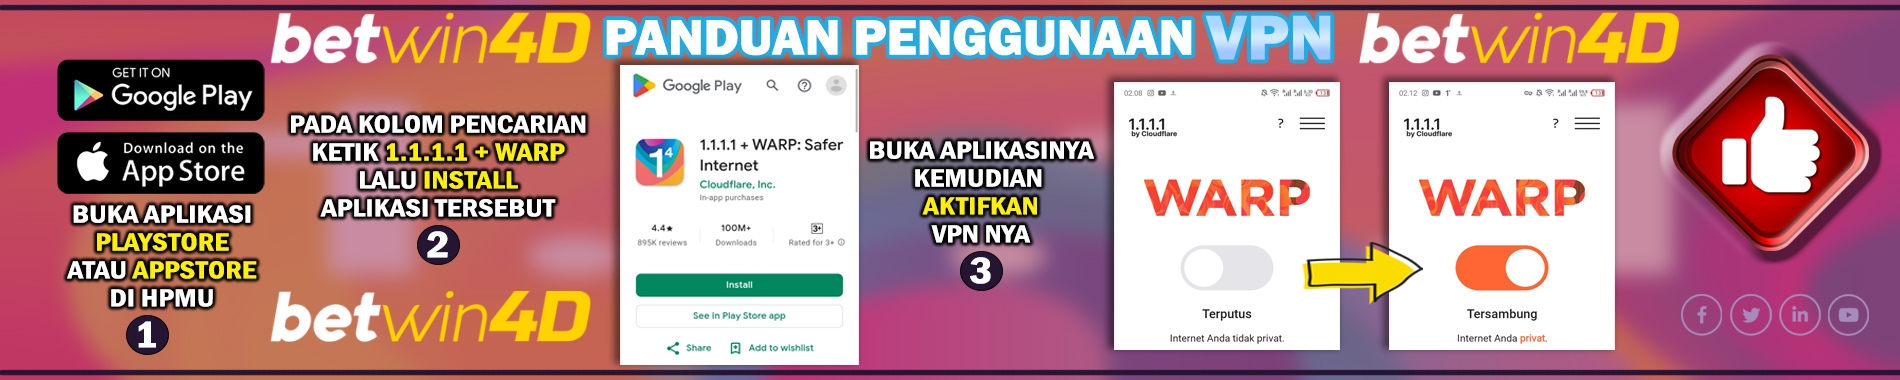 Warp VPN 1.1.1.1 Betwin4d